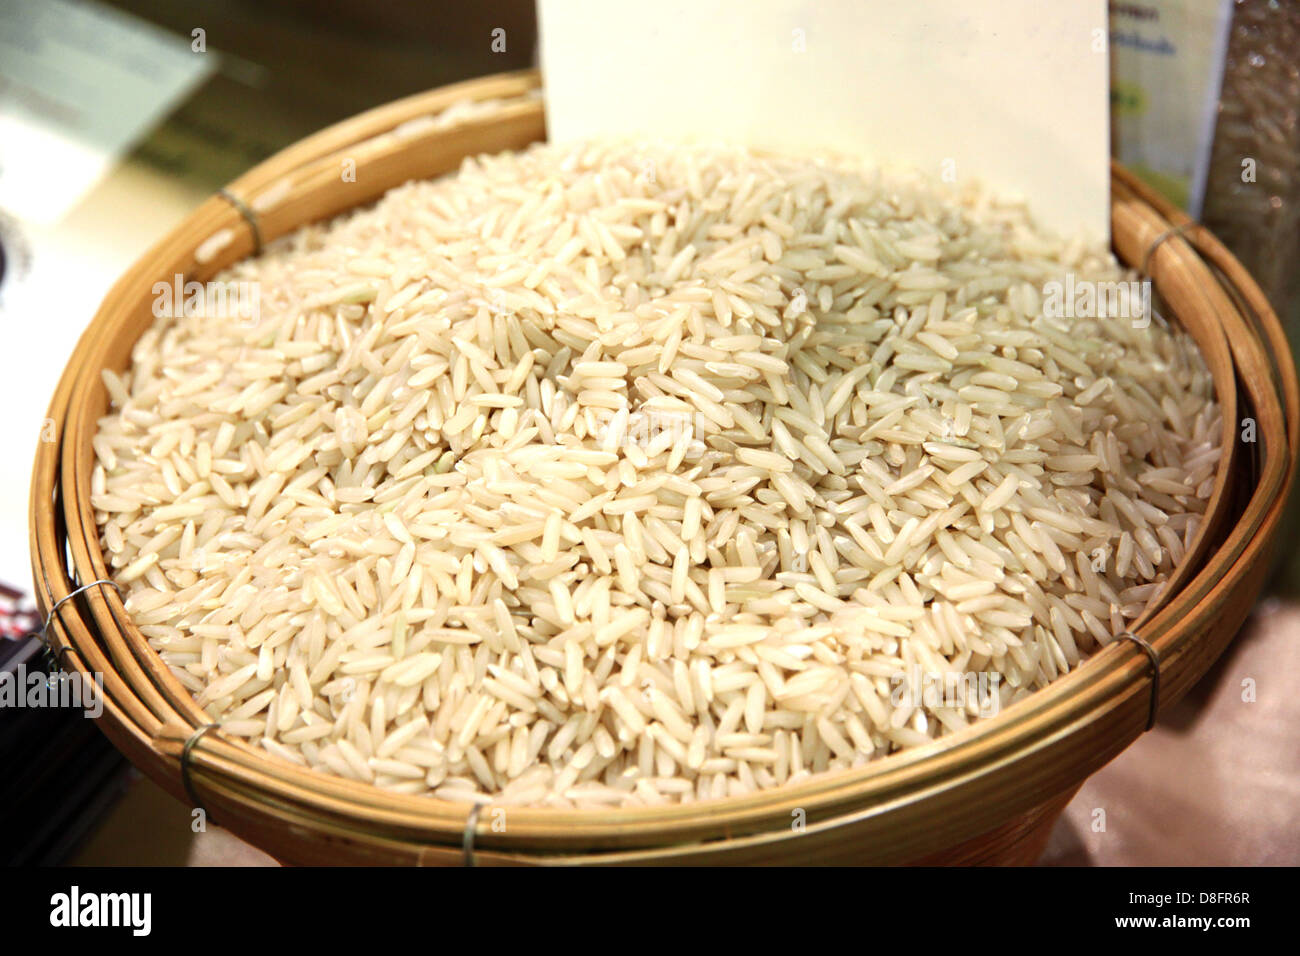 La grana di riso nel contenitore.Il riso è di colore bianco. Foto Stock